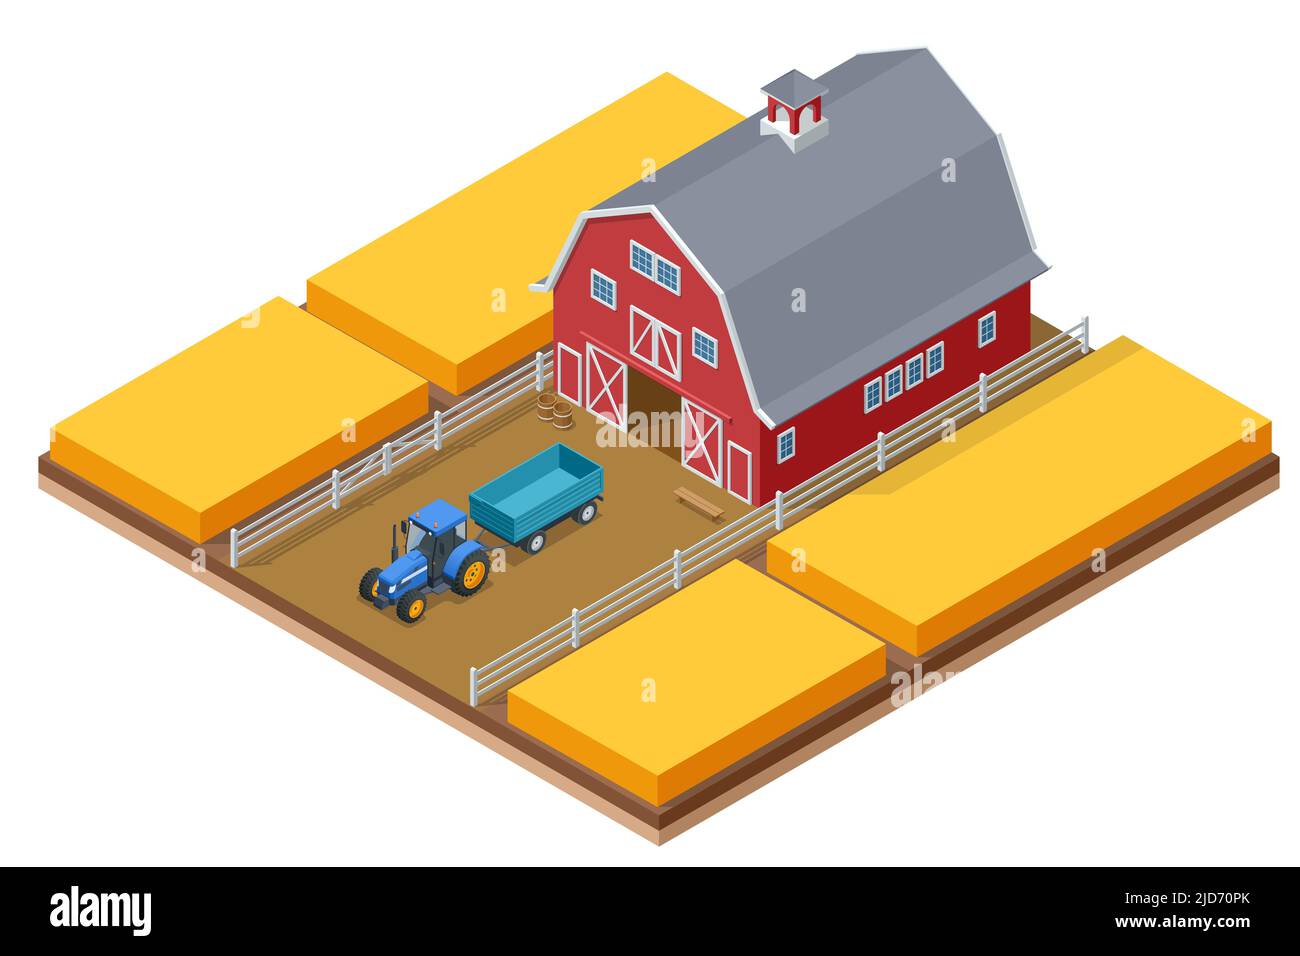 Ferme isométrique avec tracteur agricole, champs cultivés. Agriculture champ de blé. Illustration de Vecteur